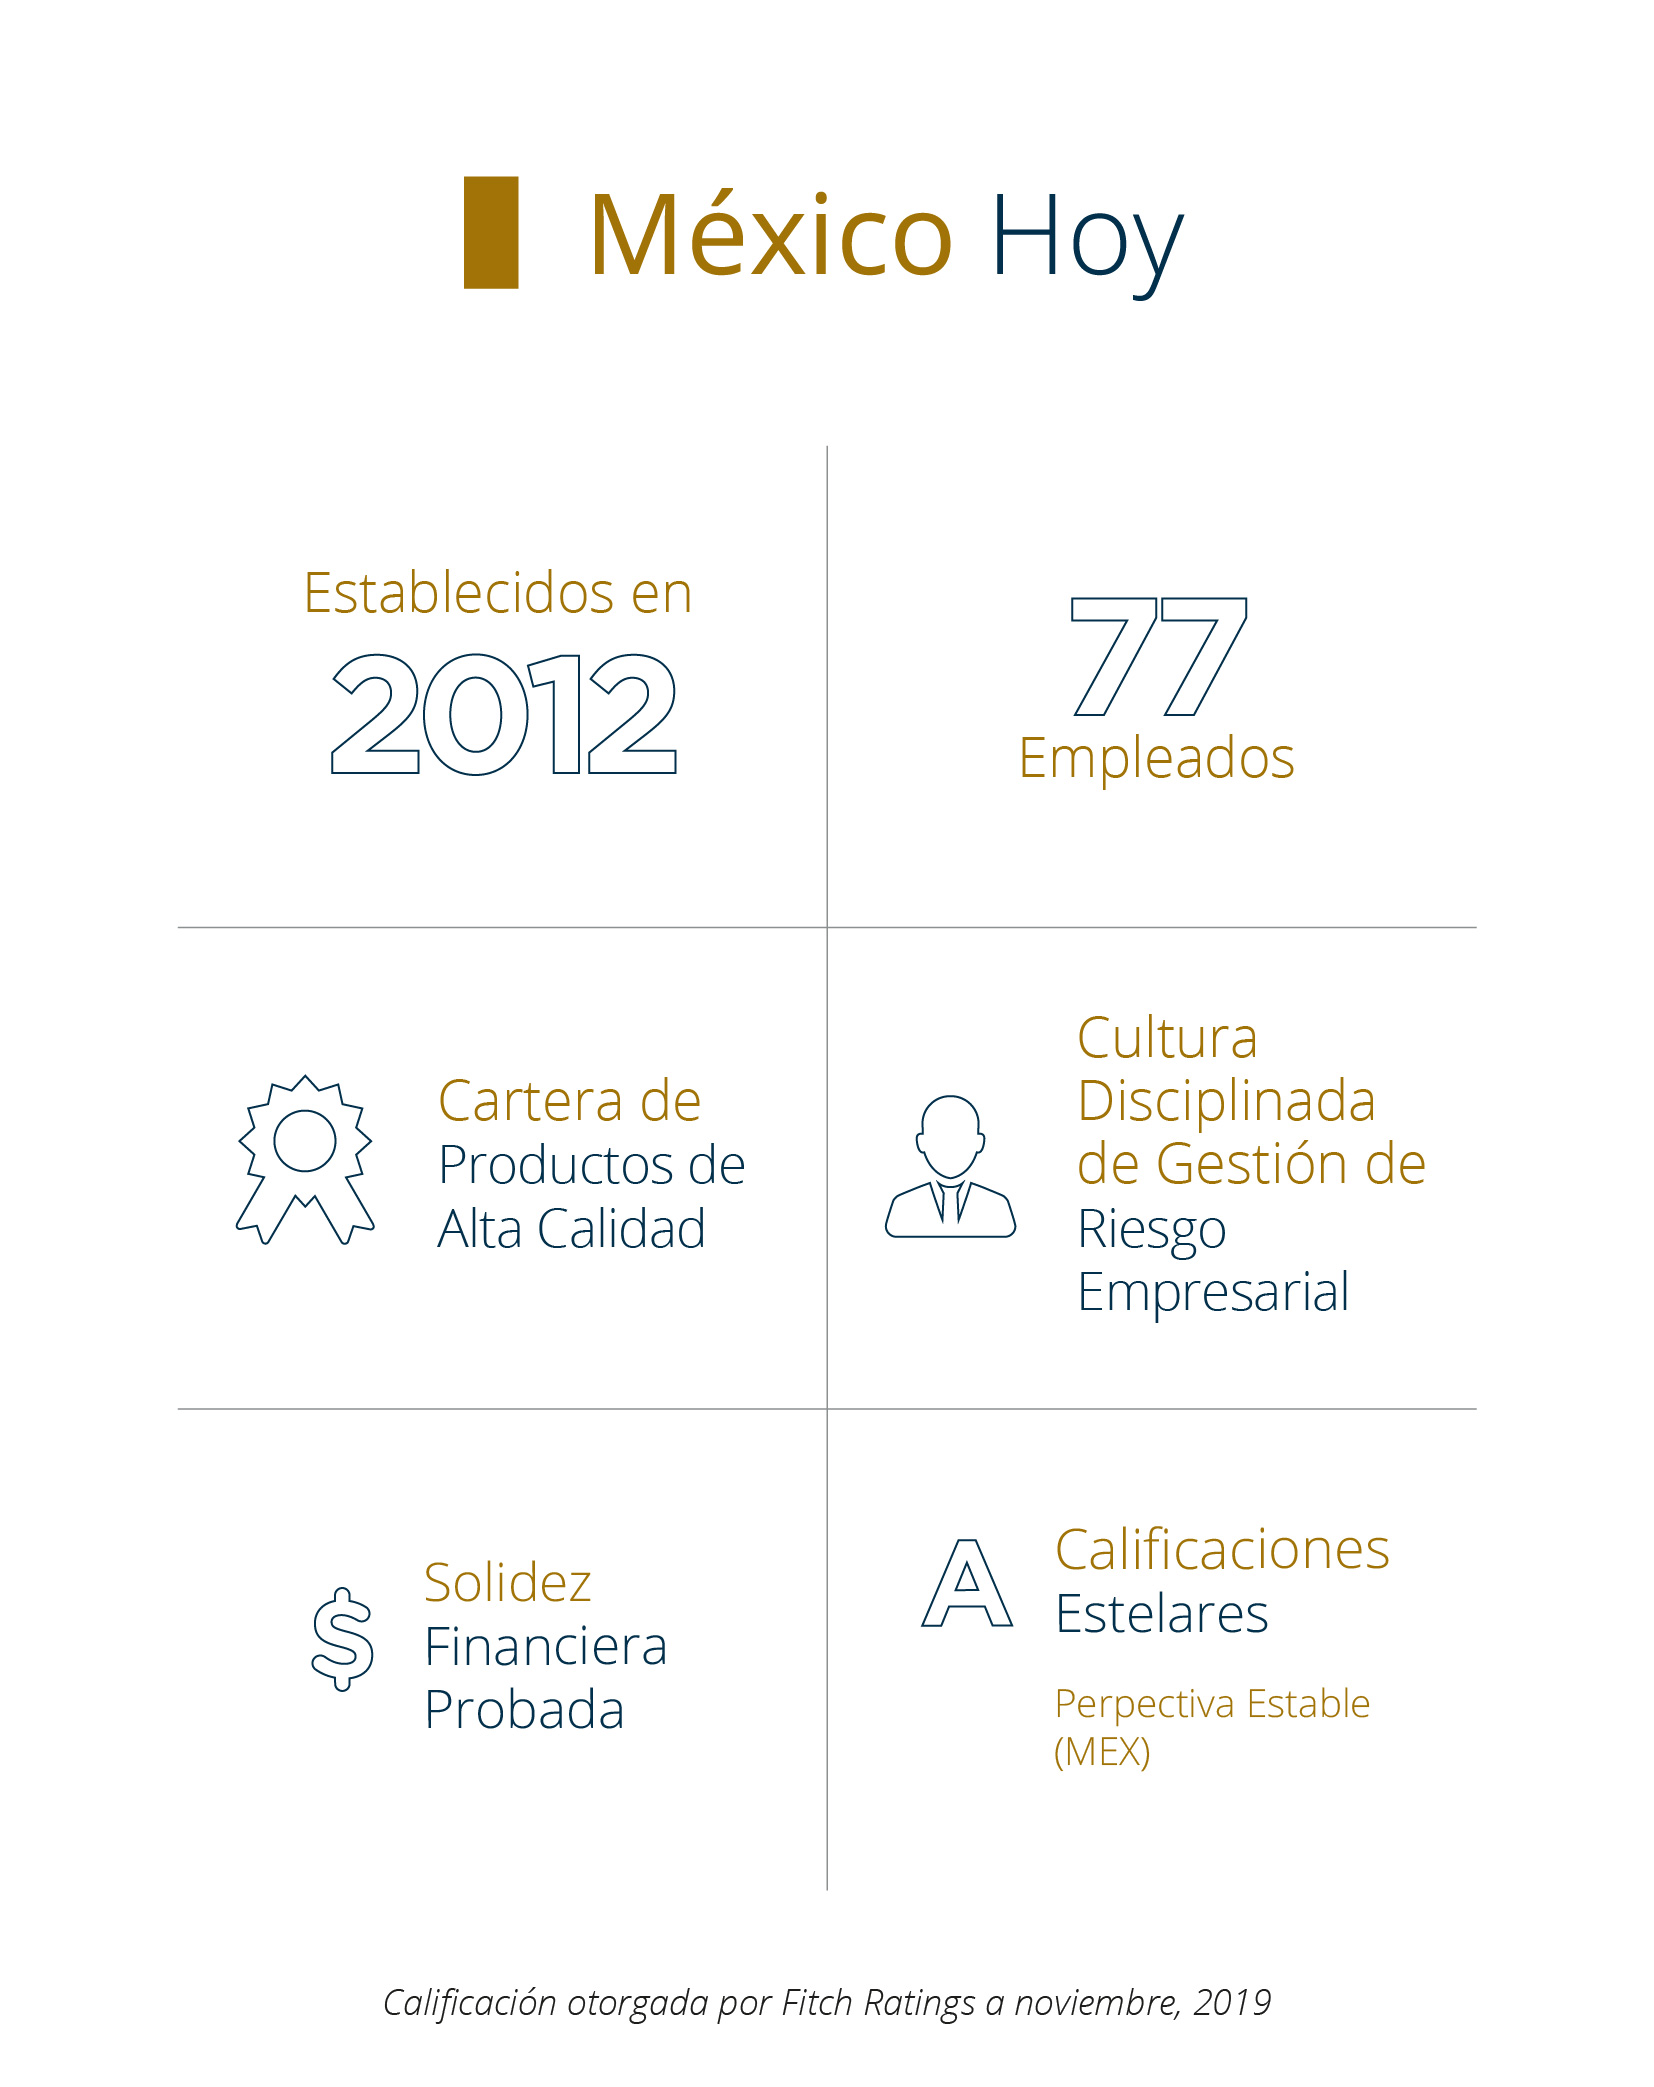 Sobre Pan-American Life Insurance Group de Mexico 